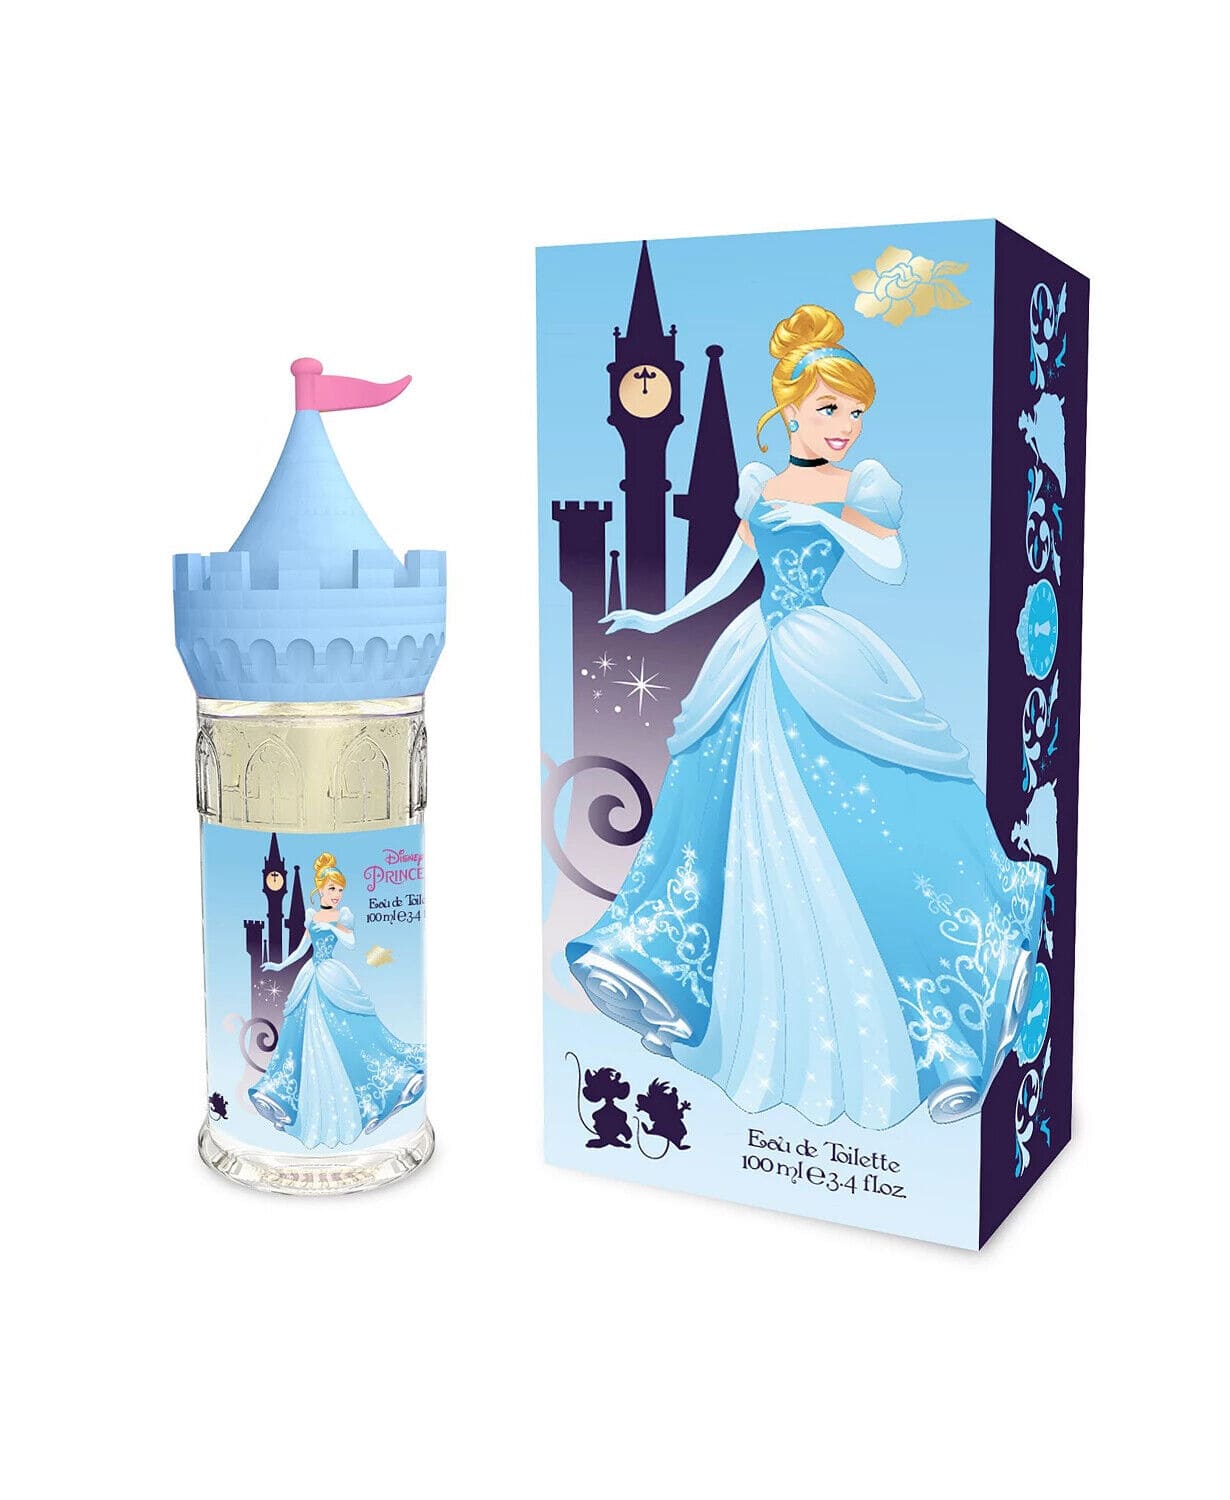 Perfume-Disney-Princesas-Cenicienta-Ninas